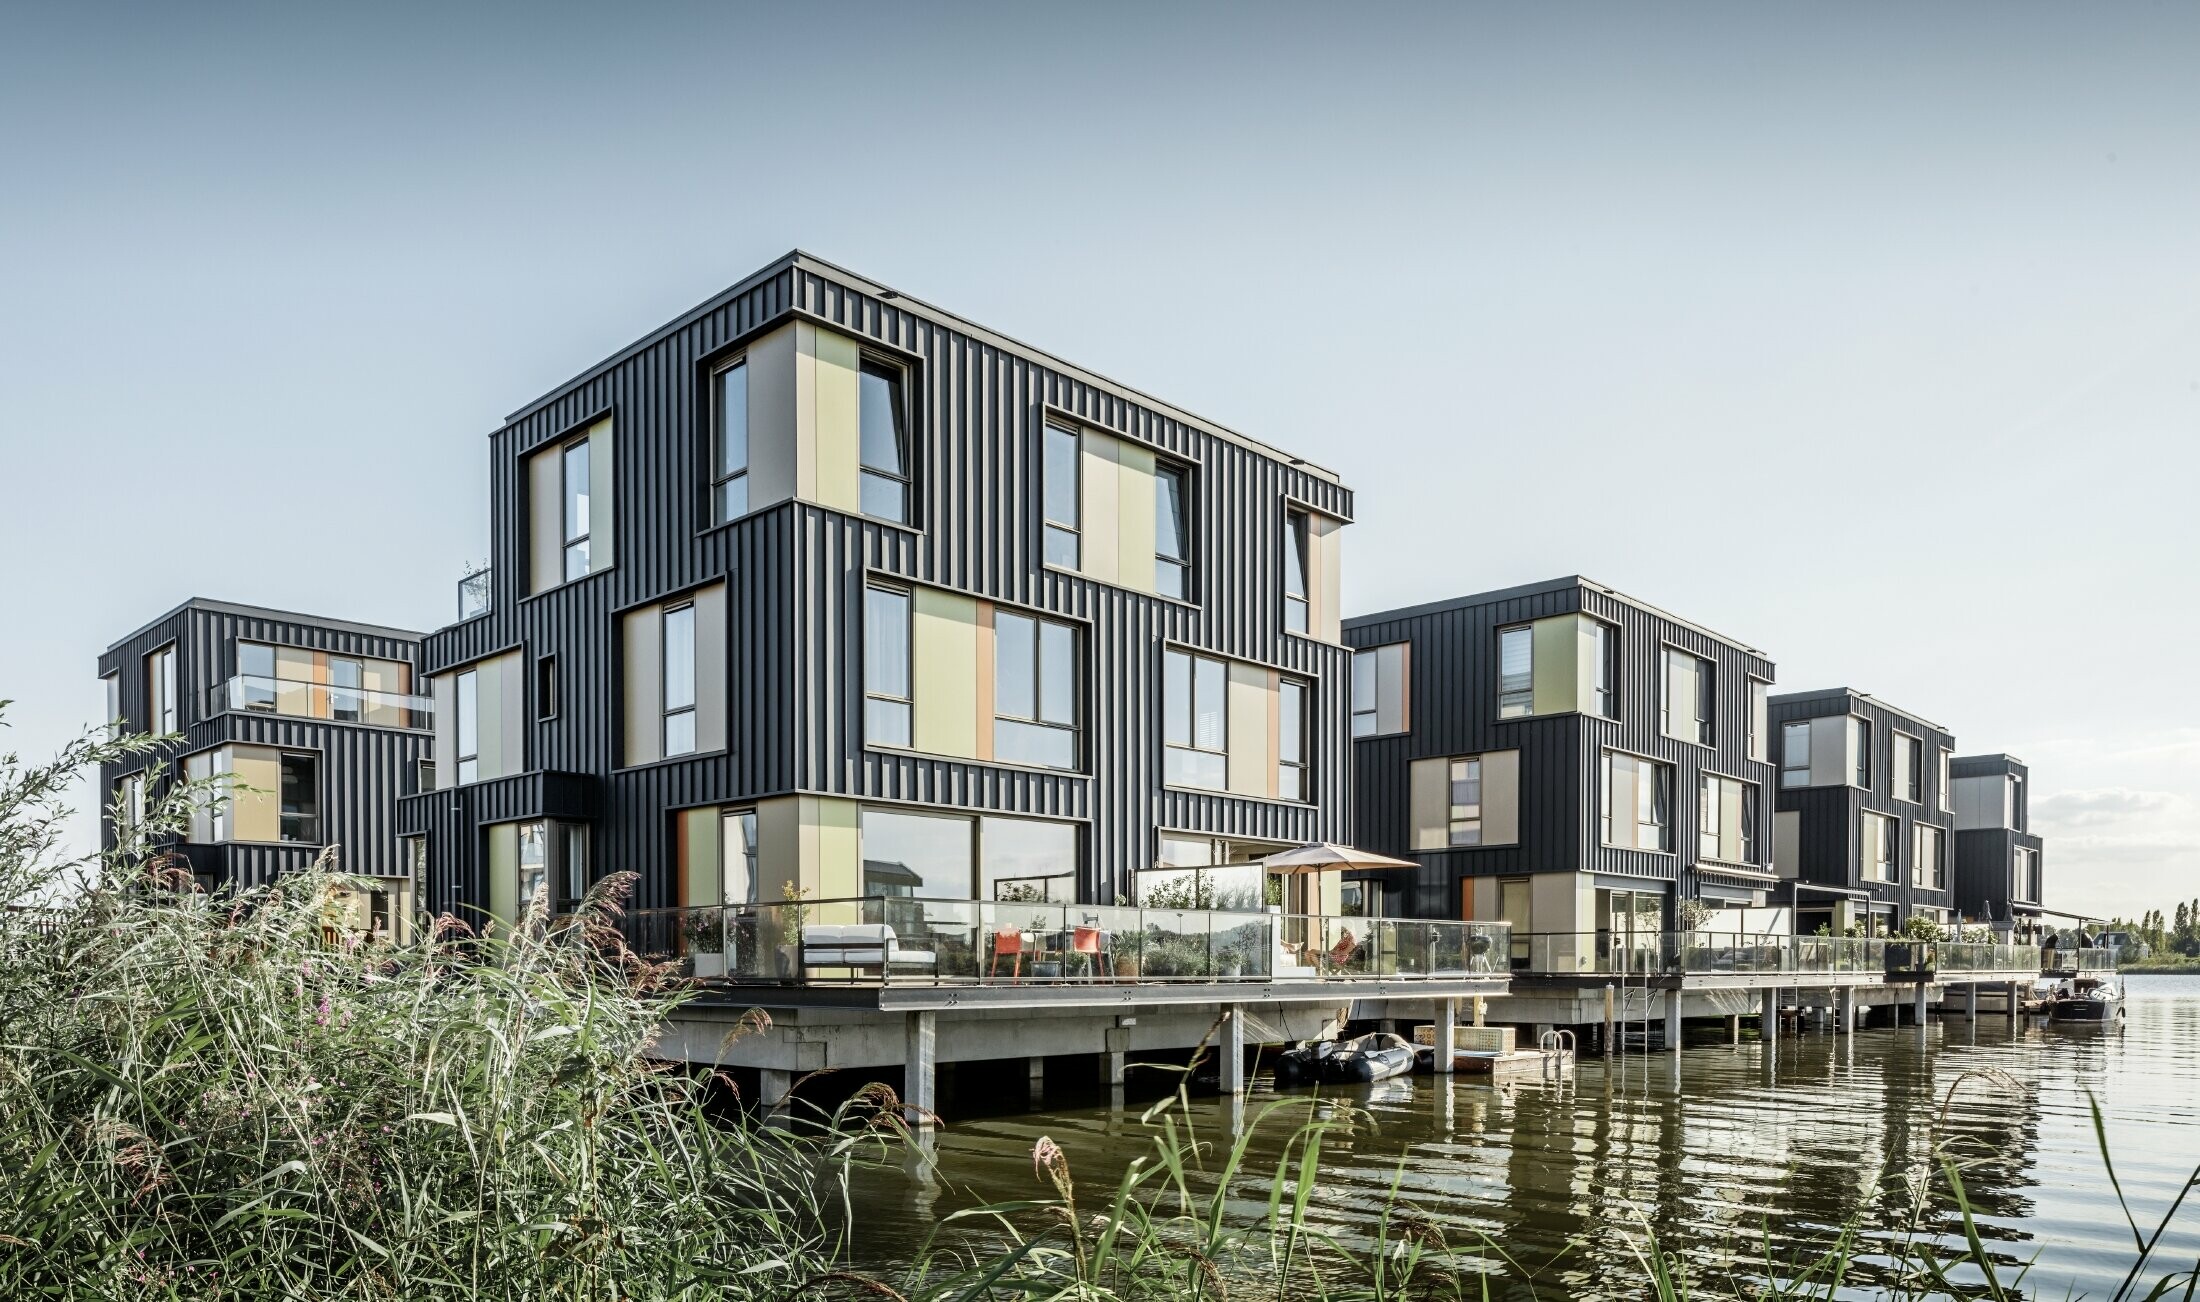 Neuer Wohnpark mit Zweifamilienhäusern an einem See in Amsterdam. Die Häuser wurden mit Prefalz von PREFA in P.10 Anthrazit bekleidet.